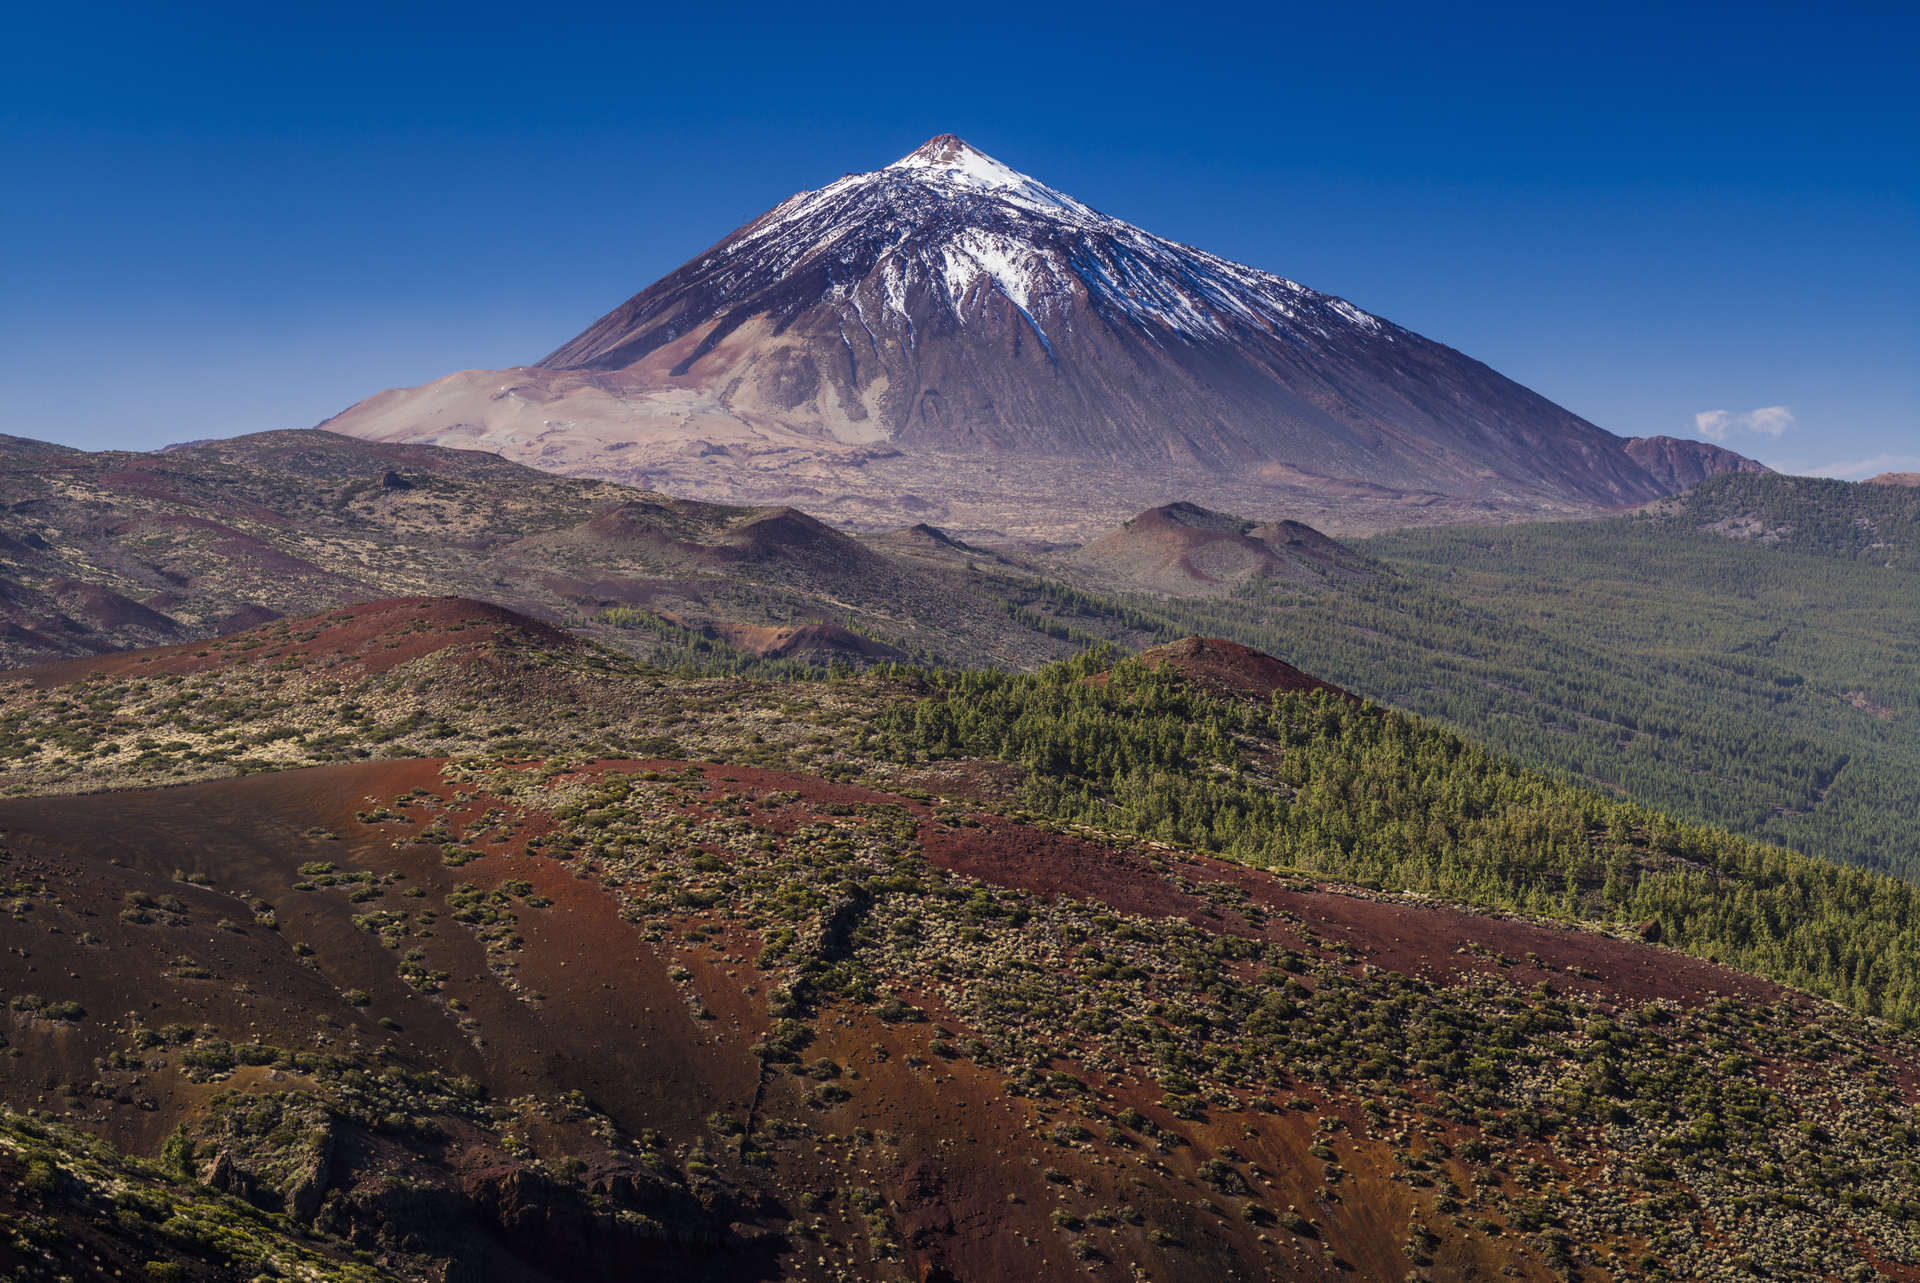 Nastrojowy, wulkaniczny krajobraz wokół szczytu Teide to raj dla miłośników wędrówek